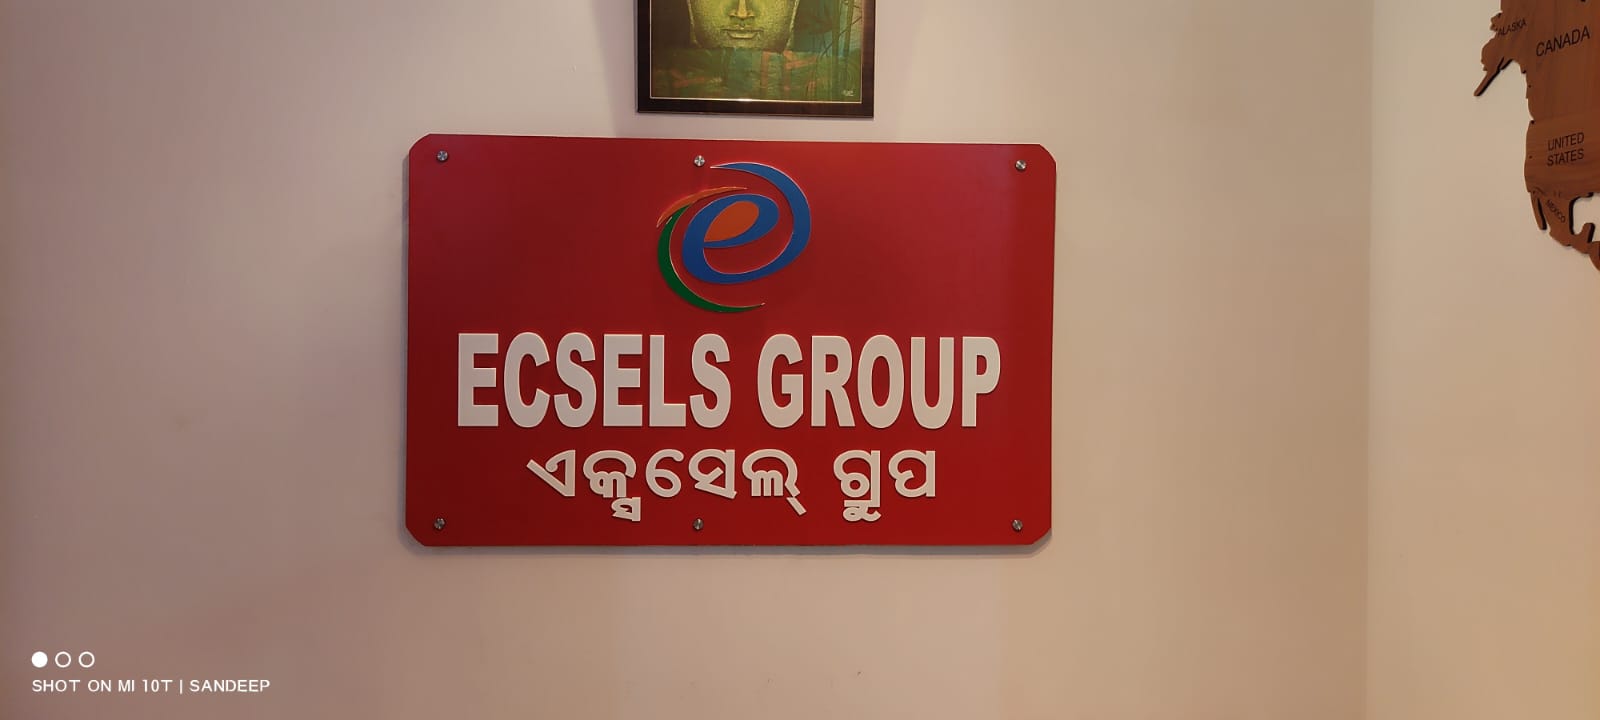 Ecsels Group